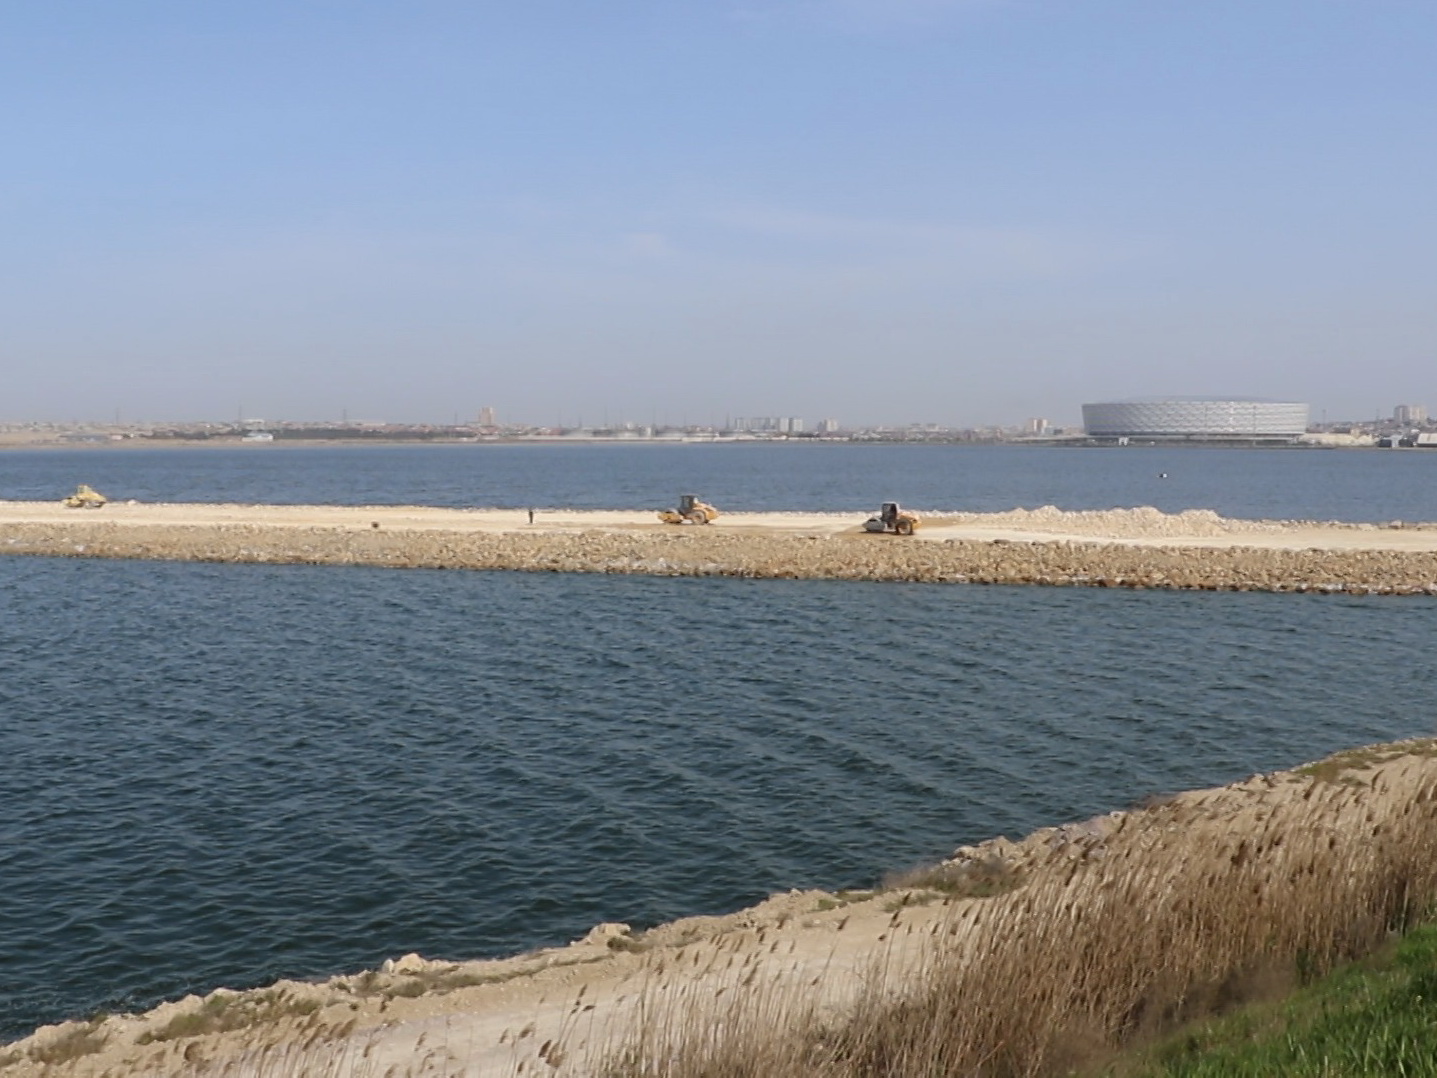 Какой будет новая четырехполосная дорога через озеро в Баку? – ФОТО – ВИДЕО